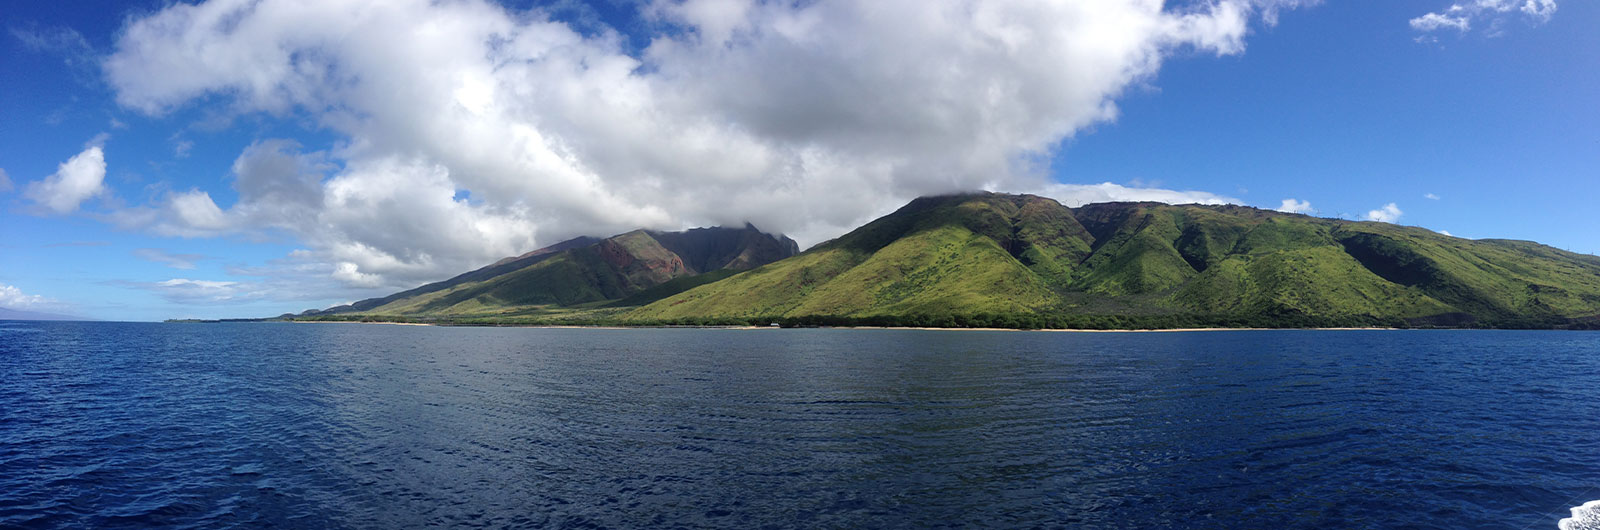 Maui Pali Ocean View